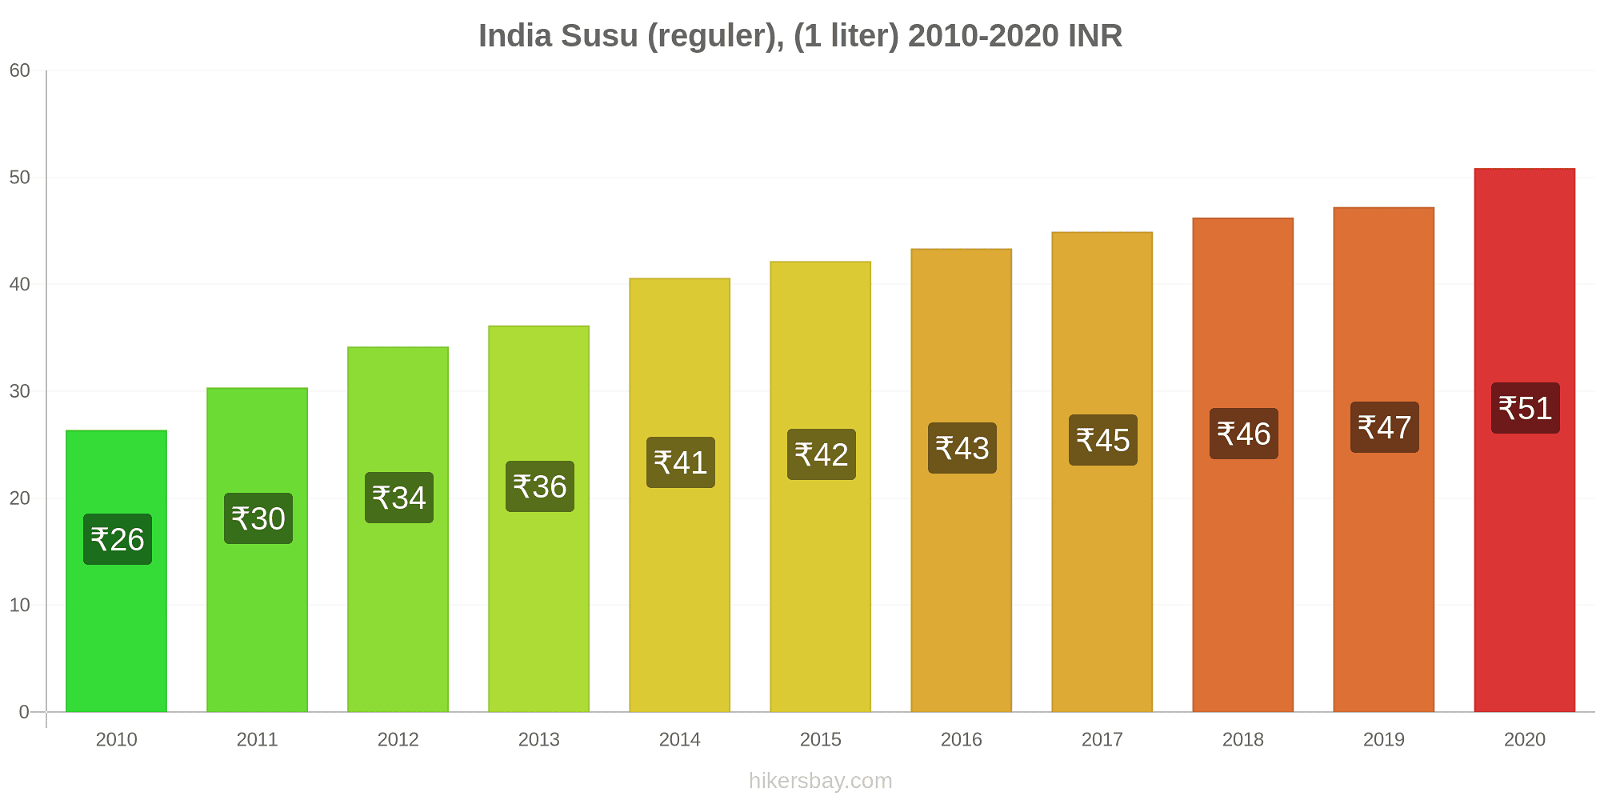 India perubahan harga Susu (reguler), (1 liter) hikersbay.com